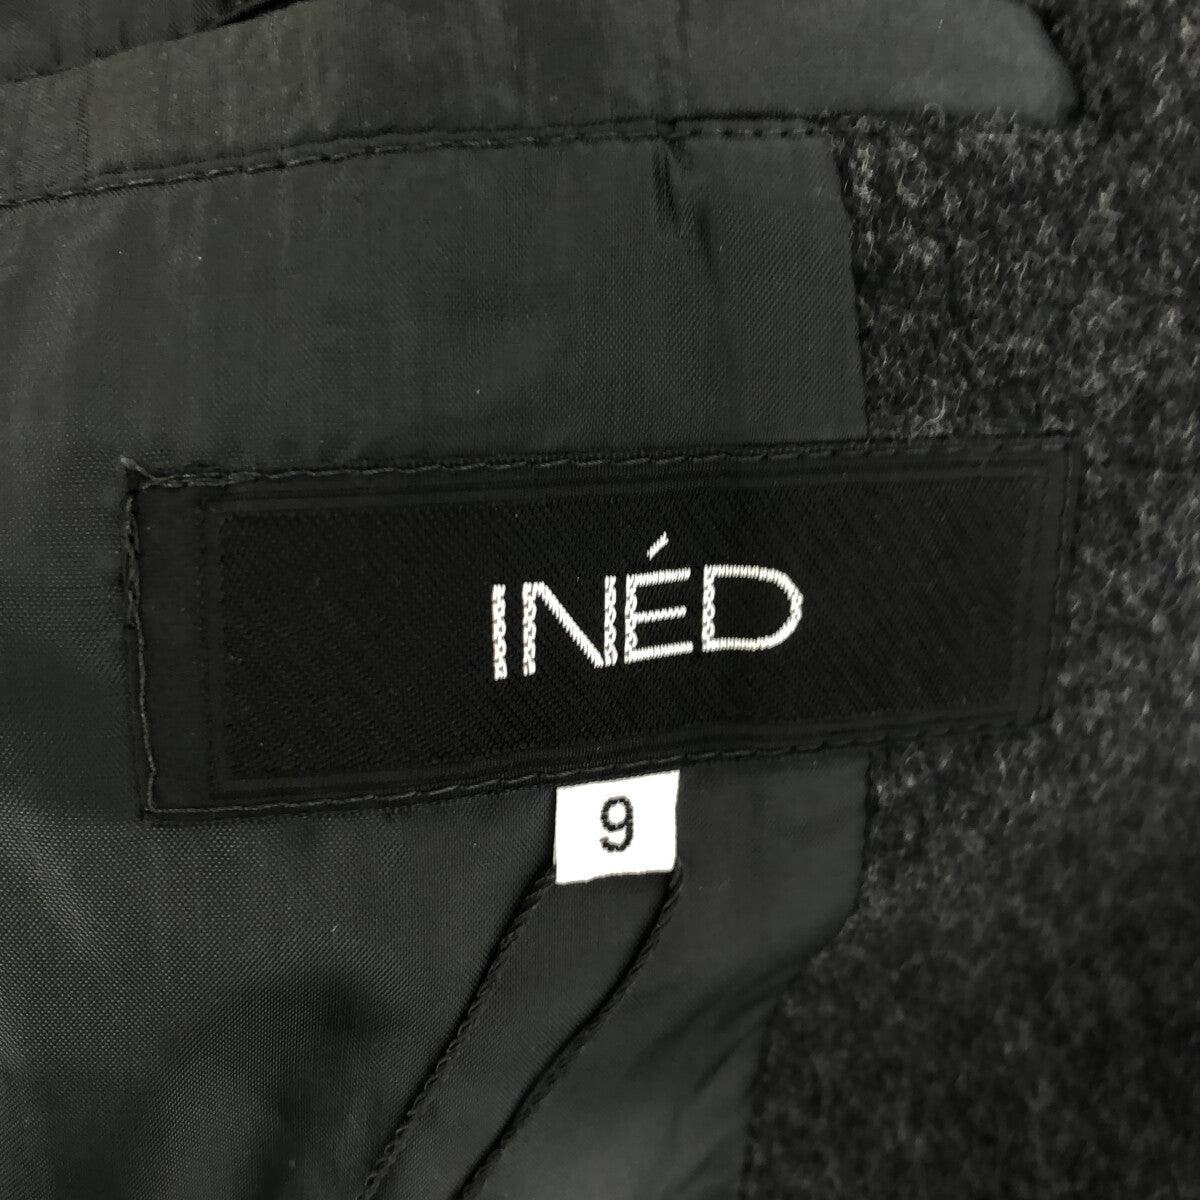 INED / イネド | ウール テーラードジャケット | 9 | ダークグレー